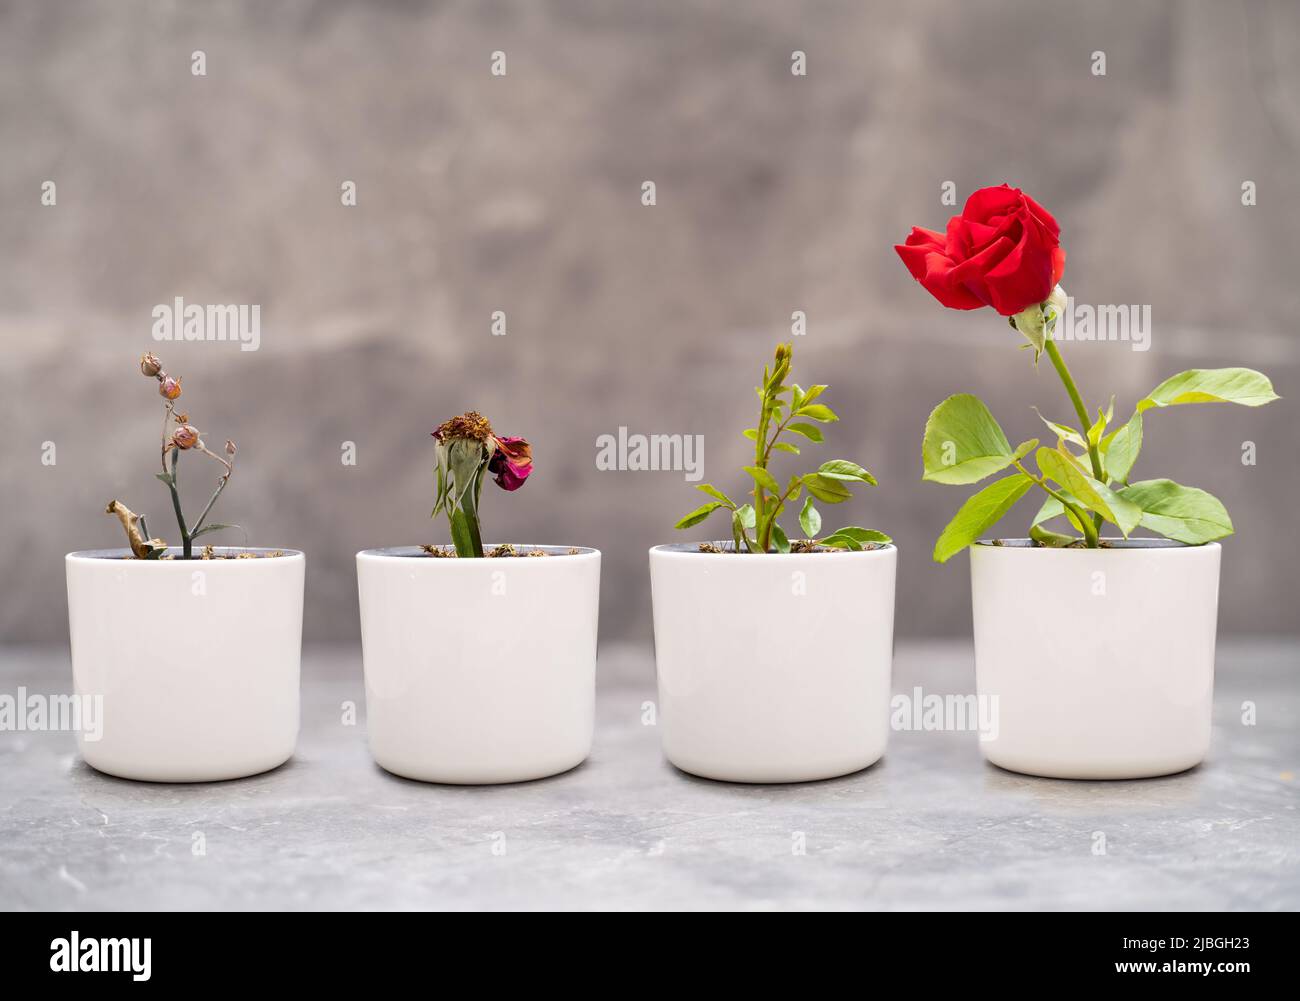 Nahaufnahme von trockenen und perfekt gewachsenen Rosen in der Vase als Symbol des Lernens aus Fehlern, Versuch und Irrtum. Konzept von Fortschritt und Erfahrung. Stockfoto